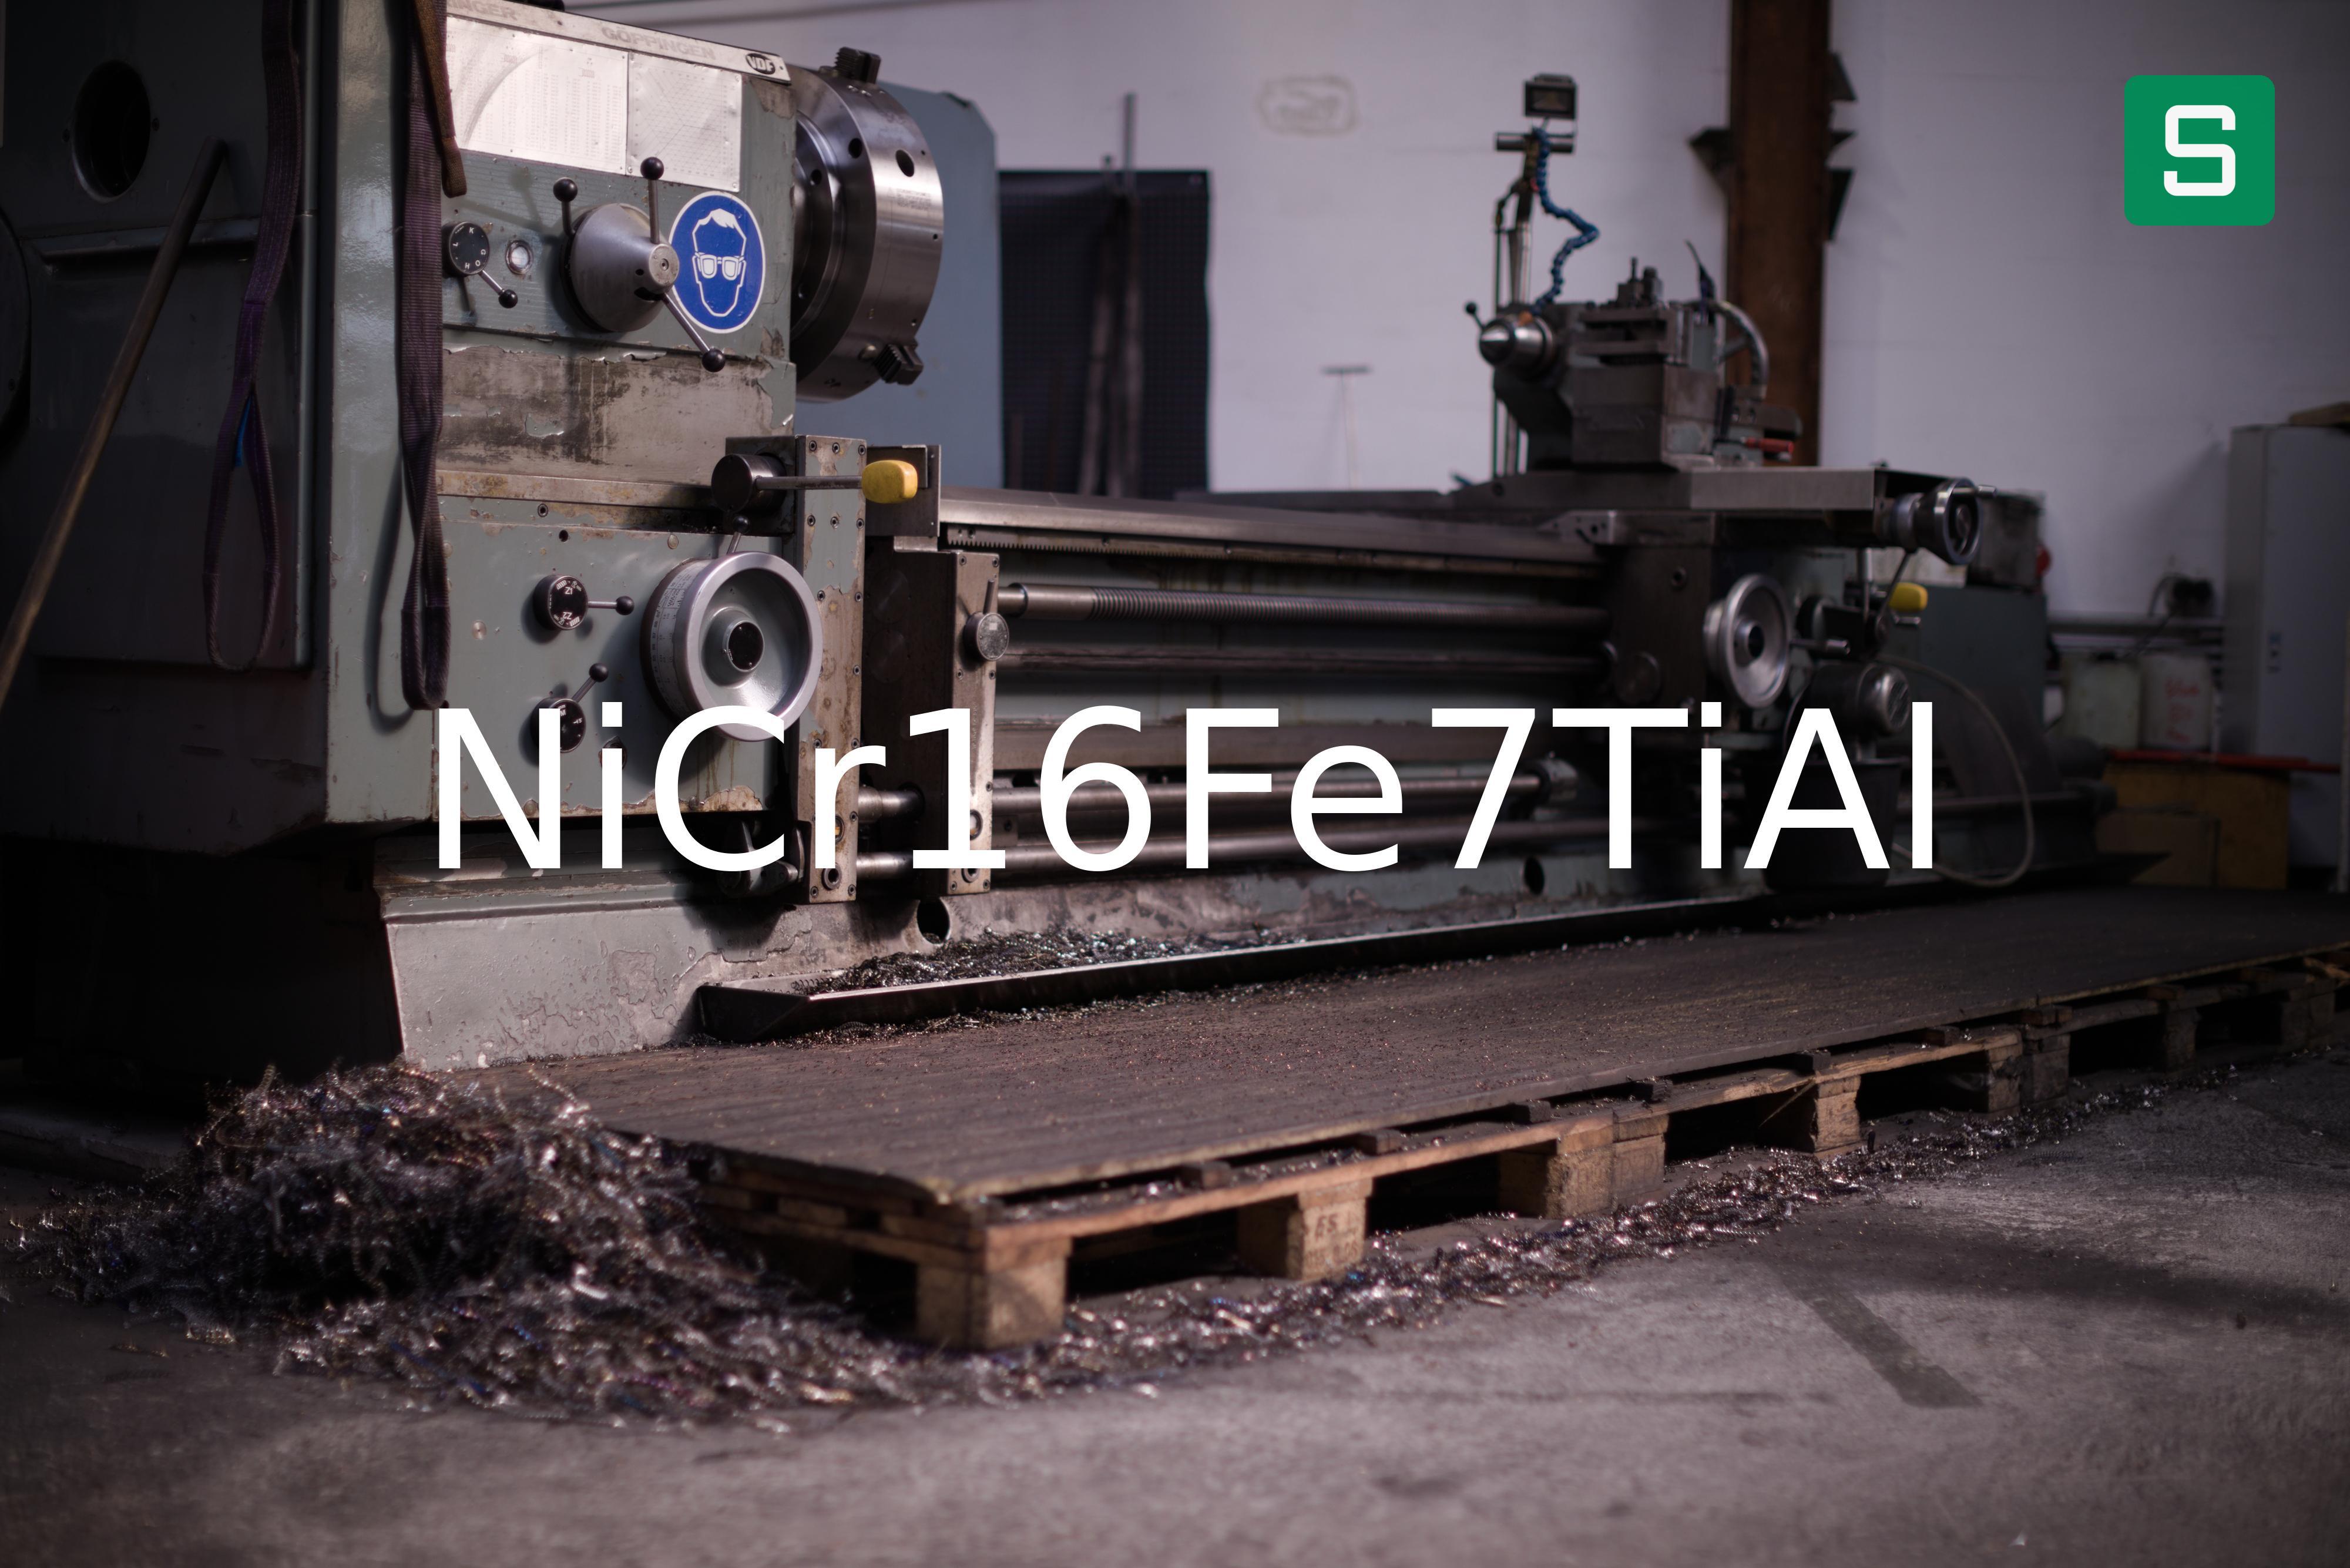 Steel Material: NiCr16Fe7TiAl